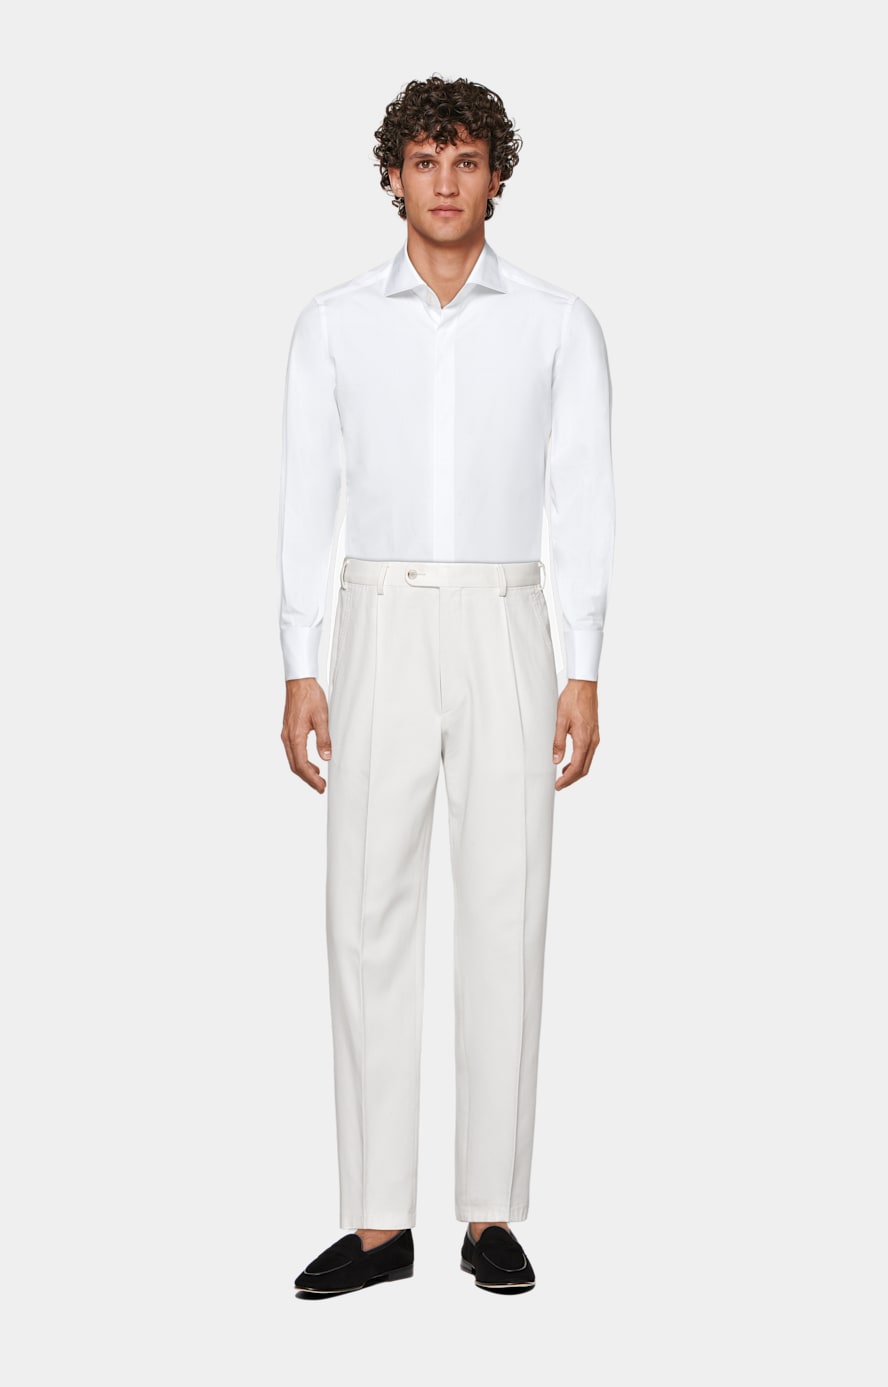 Camisa de esmoquin blanca de sarga corte Tailored